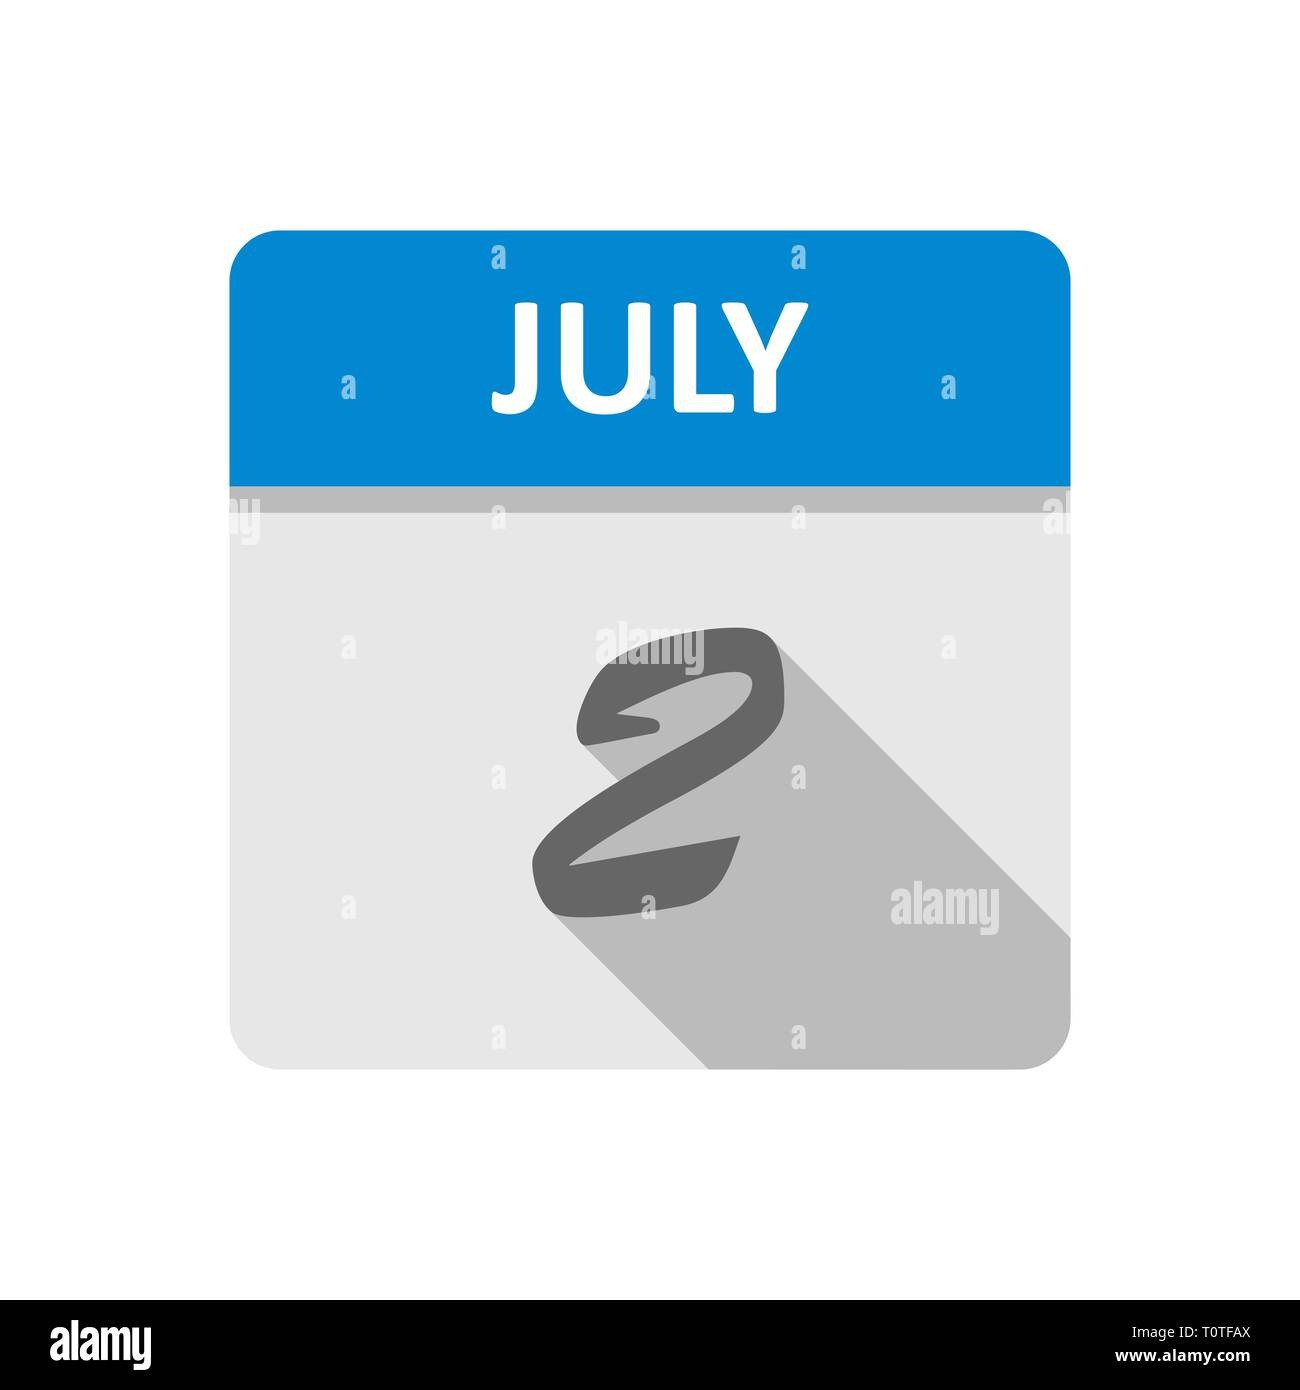 July 2nd Date on a Single Day Calendar Stock Photo Alamy